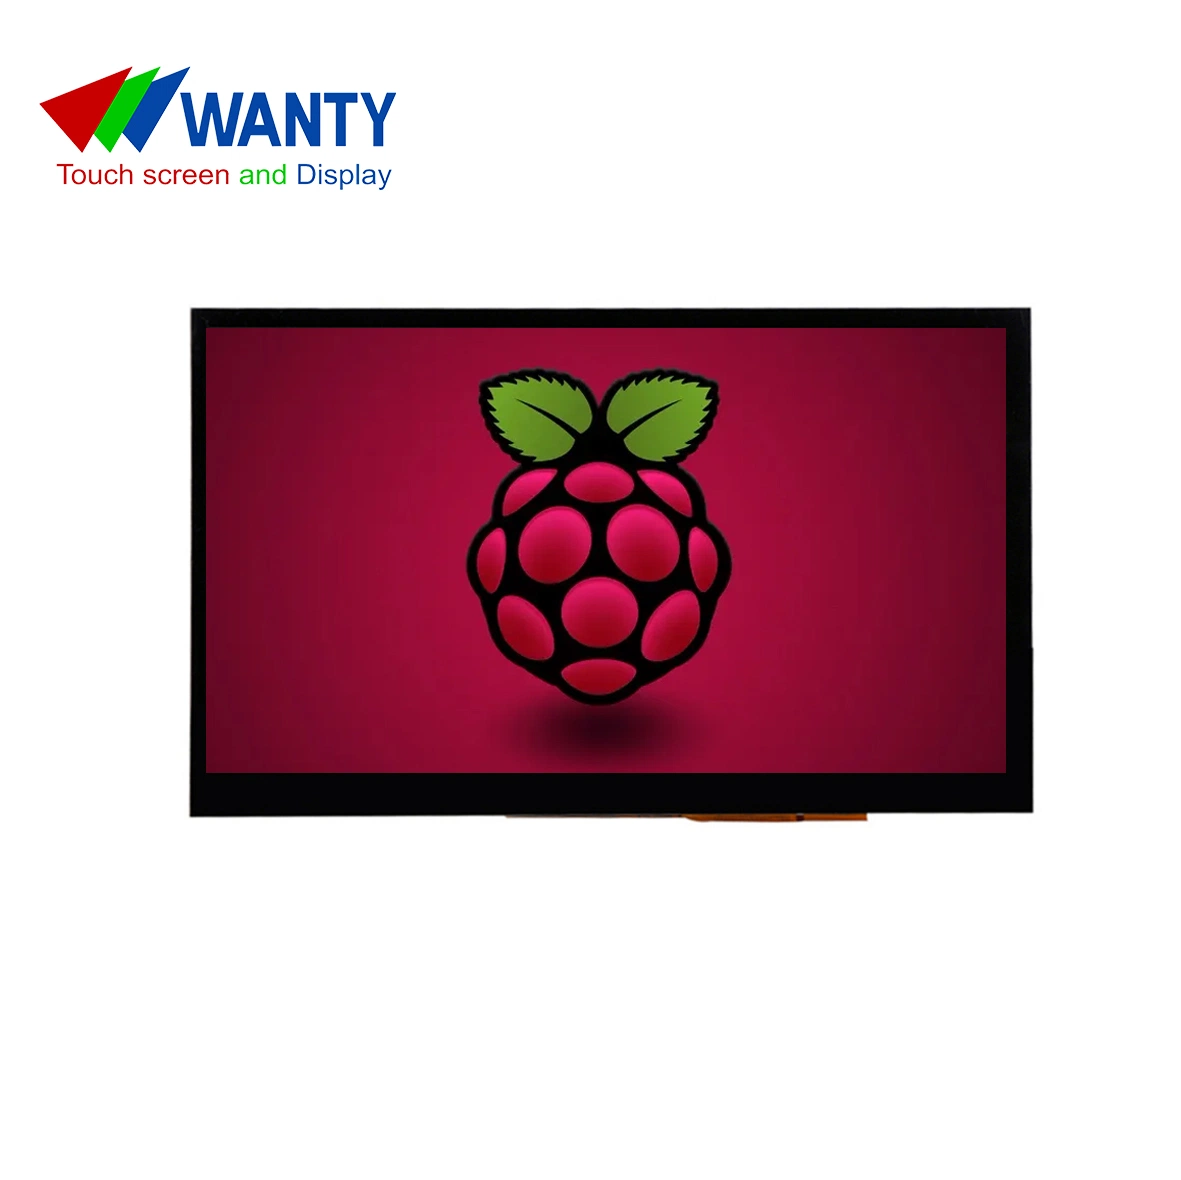 La fábrica de 7 pulgadas de HDMI GG C-panel táctil de 800x480 TN LCD TFT pantalla Pantalla táctil capacitiva de Raspberry Pi Pantalla táctil de LCD